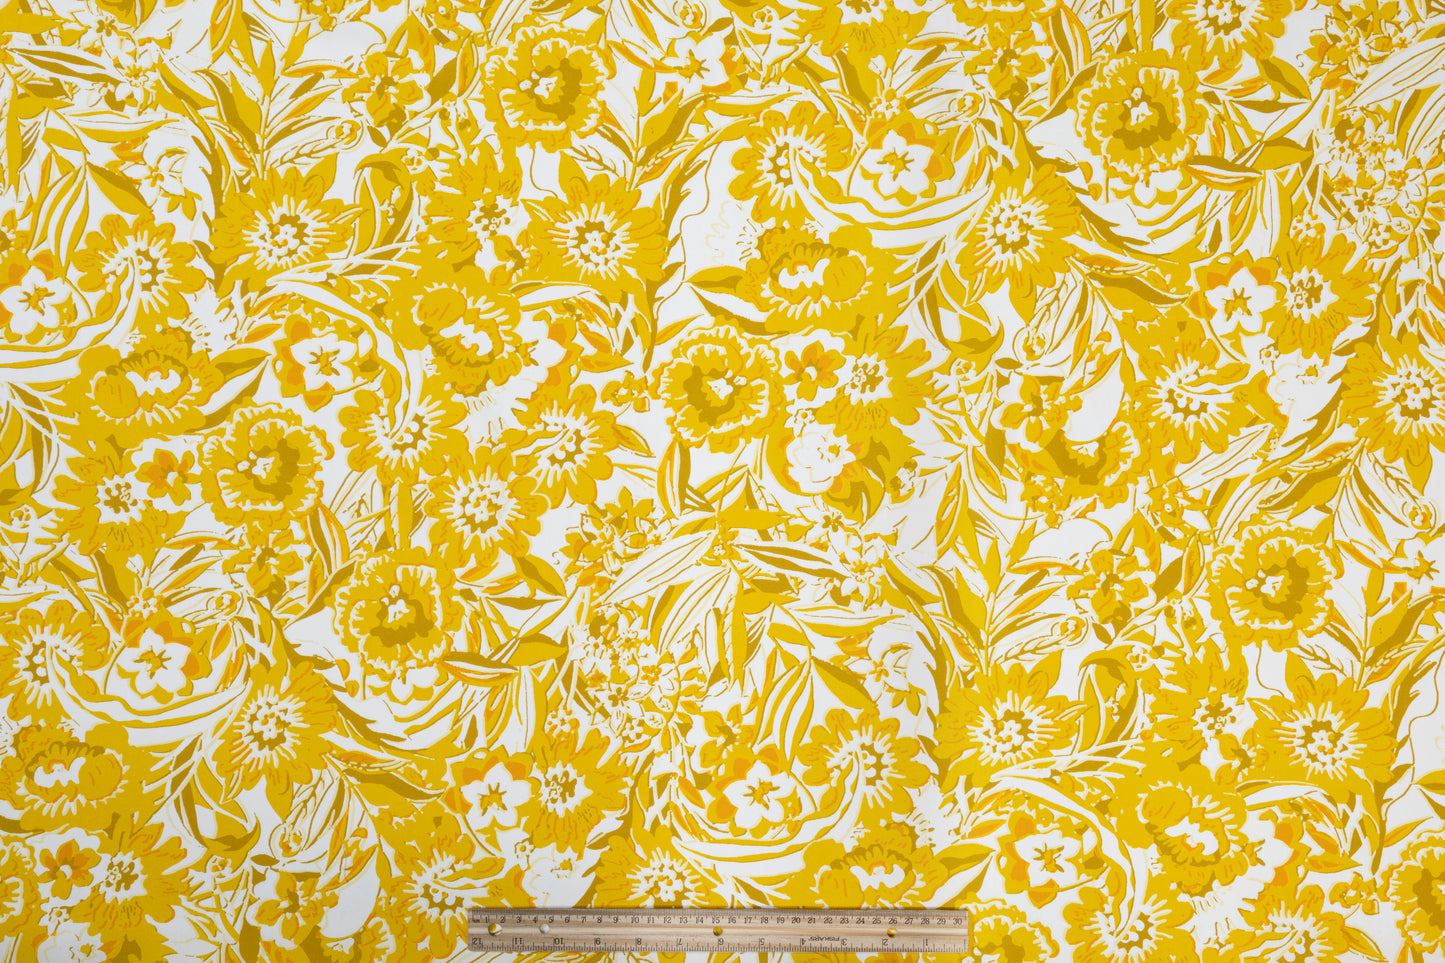 Floral Italian Cotton - Yellow, Khaki, Orange, White